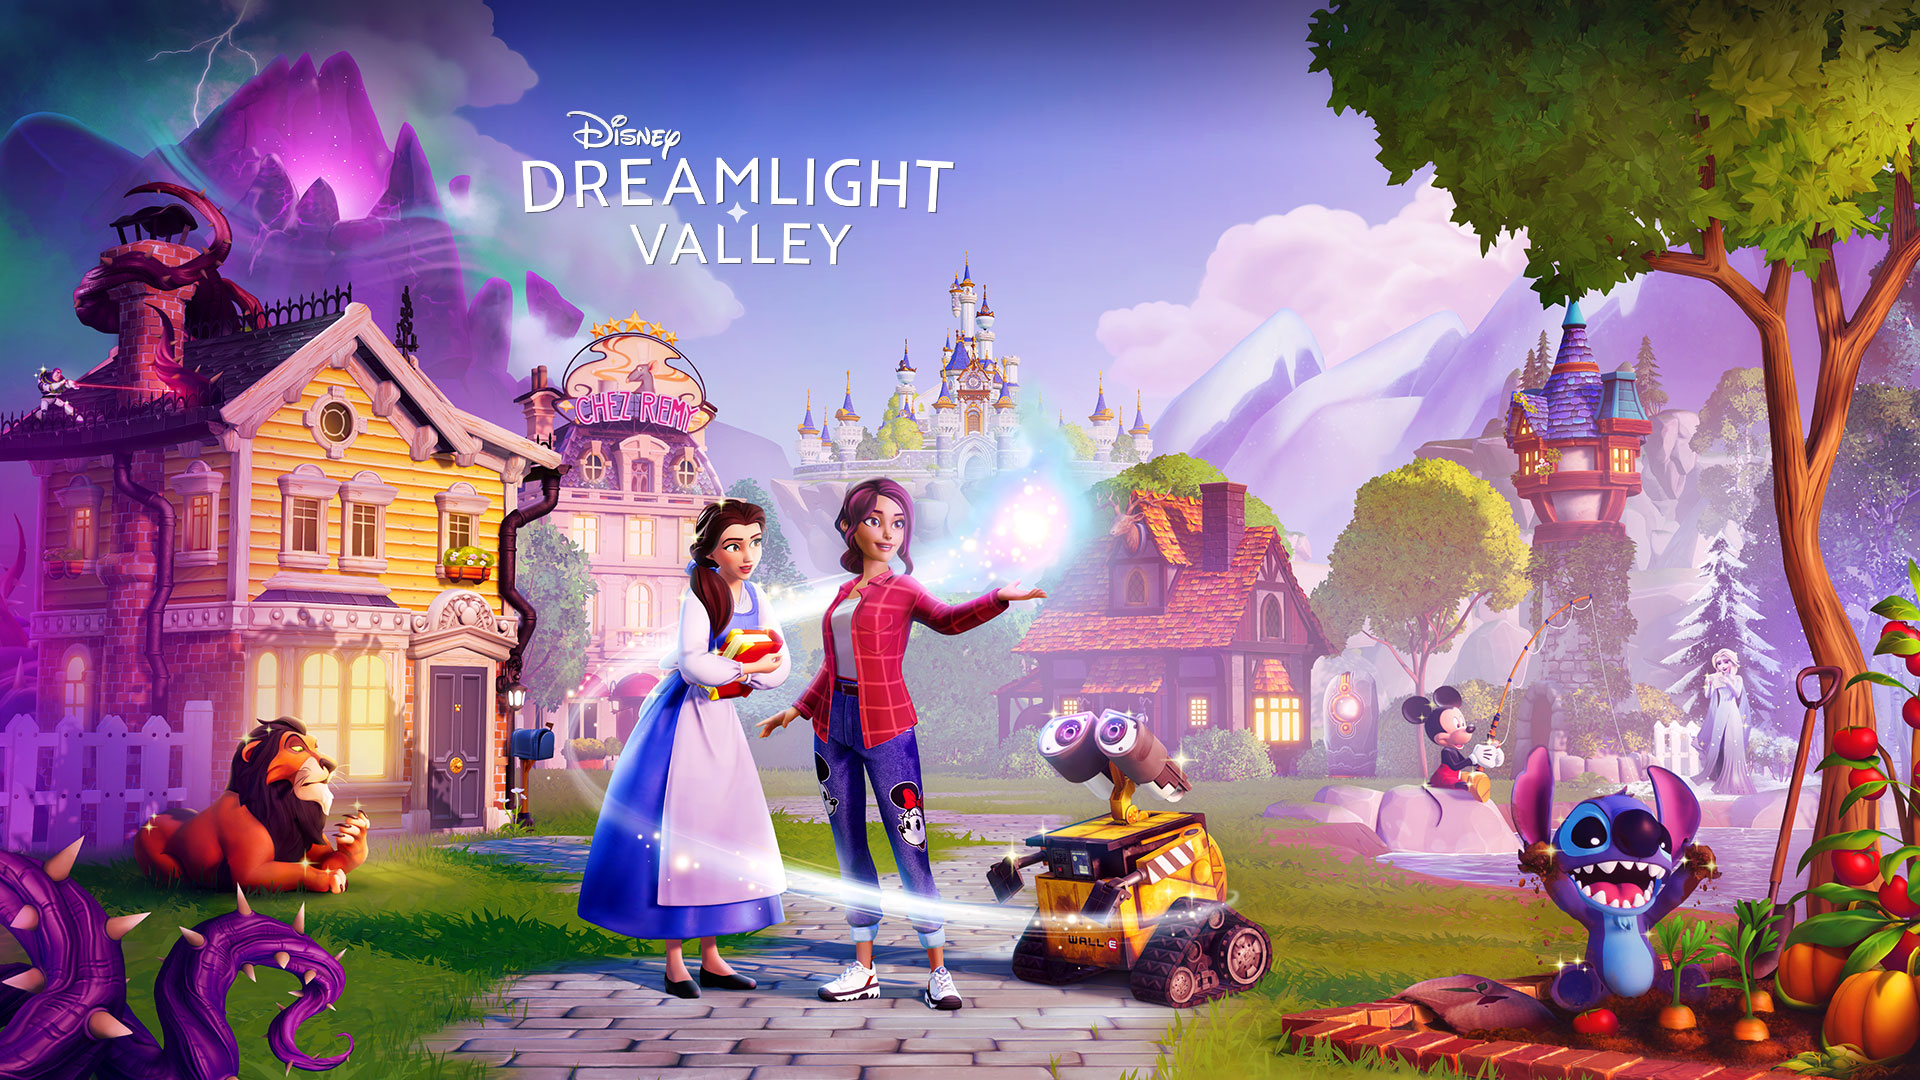 Disney Dreamlight Valley, des personnages Disney tels que Belle et Wall-E se regroupent autour d’un joueur dans une ville pittoresque. 